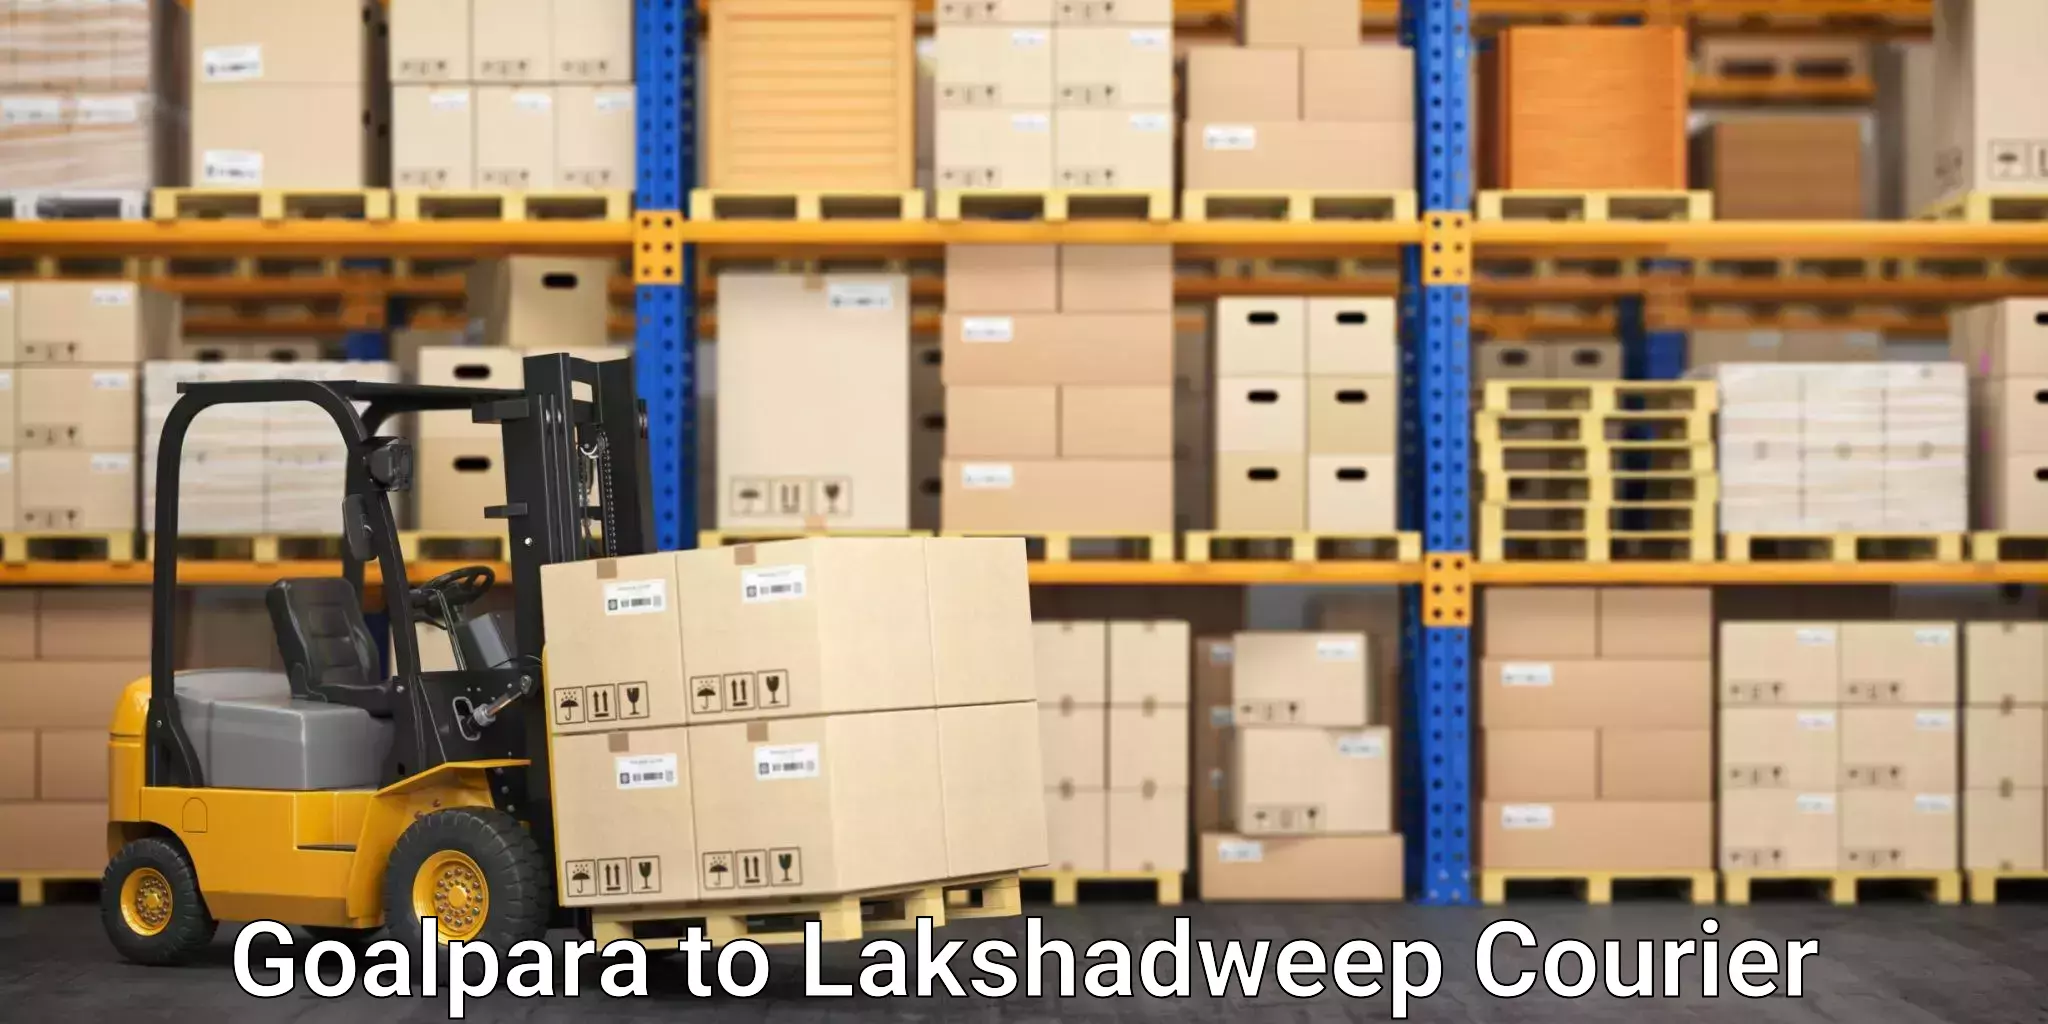 Express logistics service Goalpara to Lakshadweep